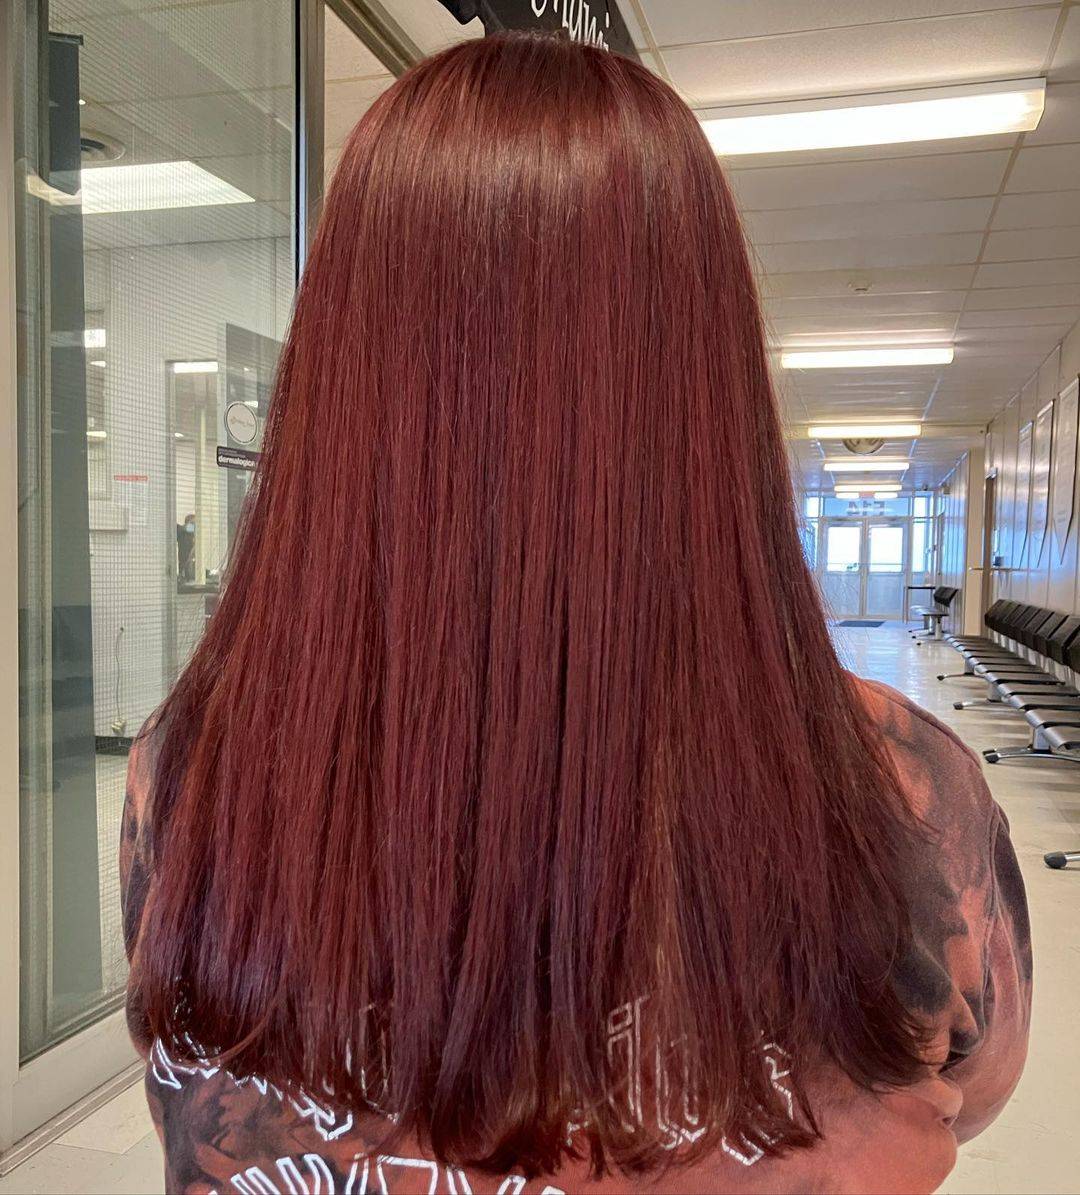 Burgundy hair color 378 burgundy hair color | burgundy hair color for women | burgundy hair color highlights Burgundy Hair Color